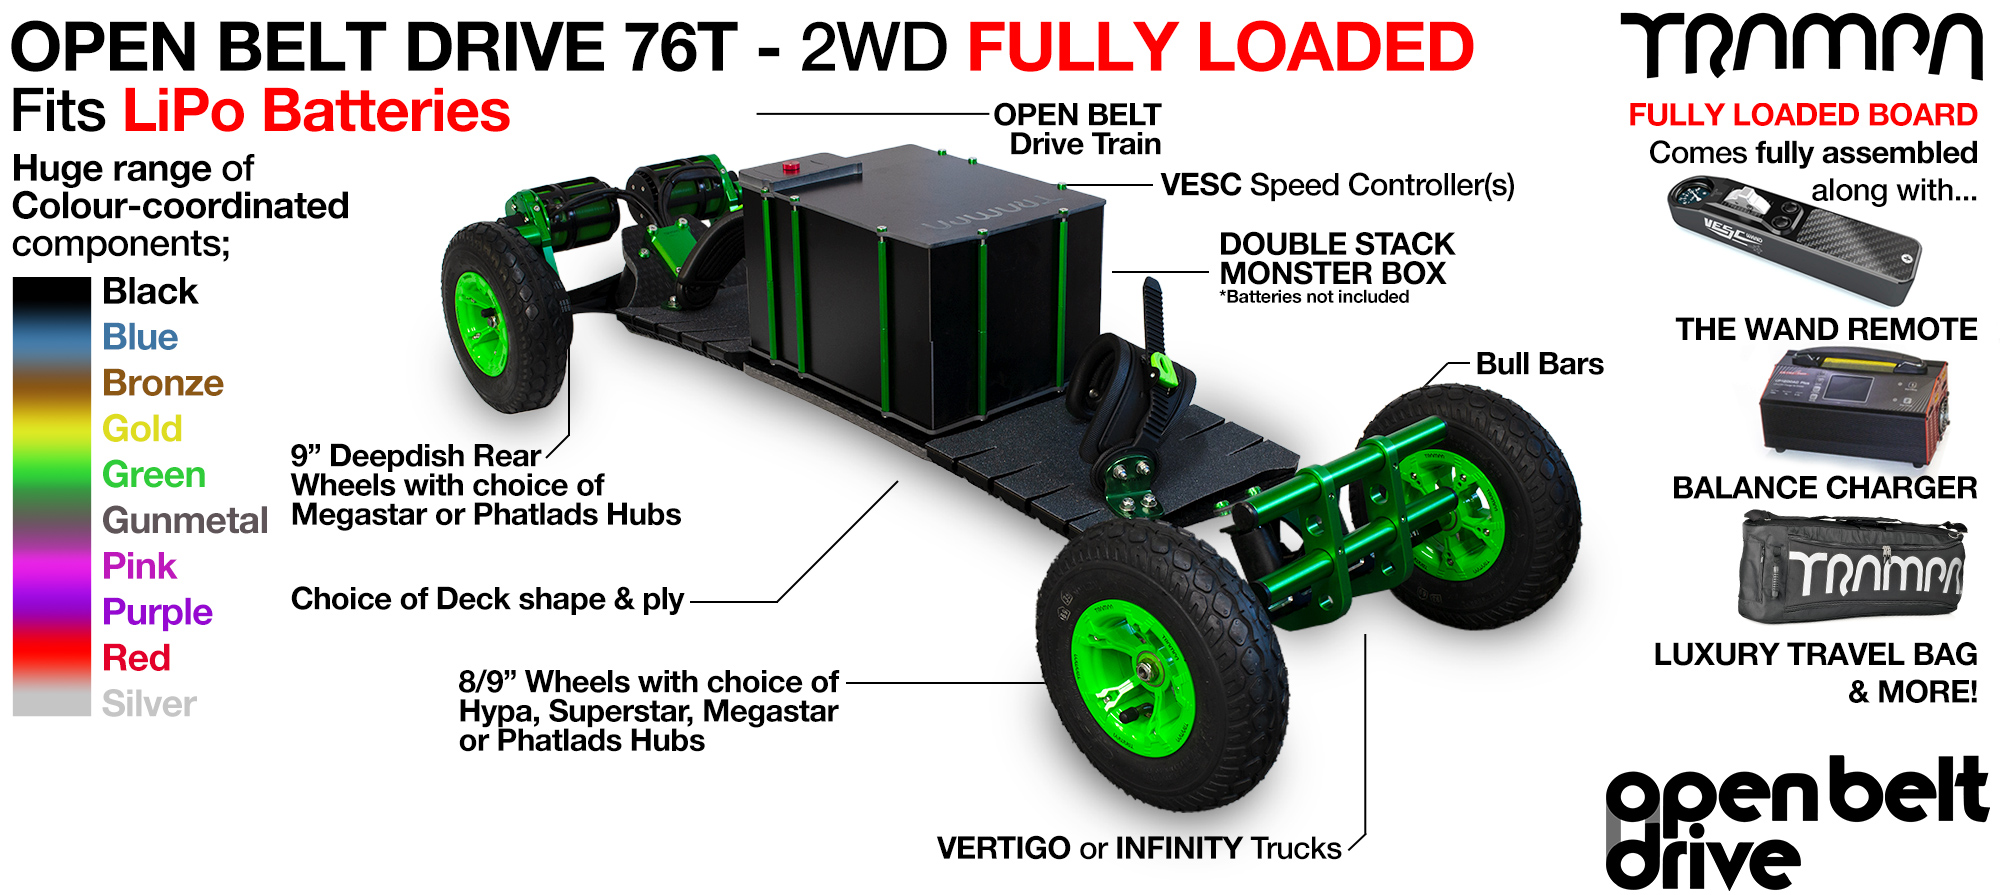 2WD 76T Open Belt Drive TRAMPA Electric Mountainboard with 8 or 9 Inch Wheels - FULLY LOADED Li-Po